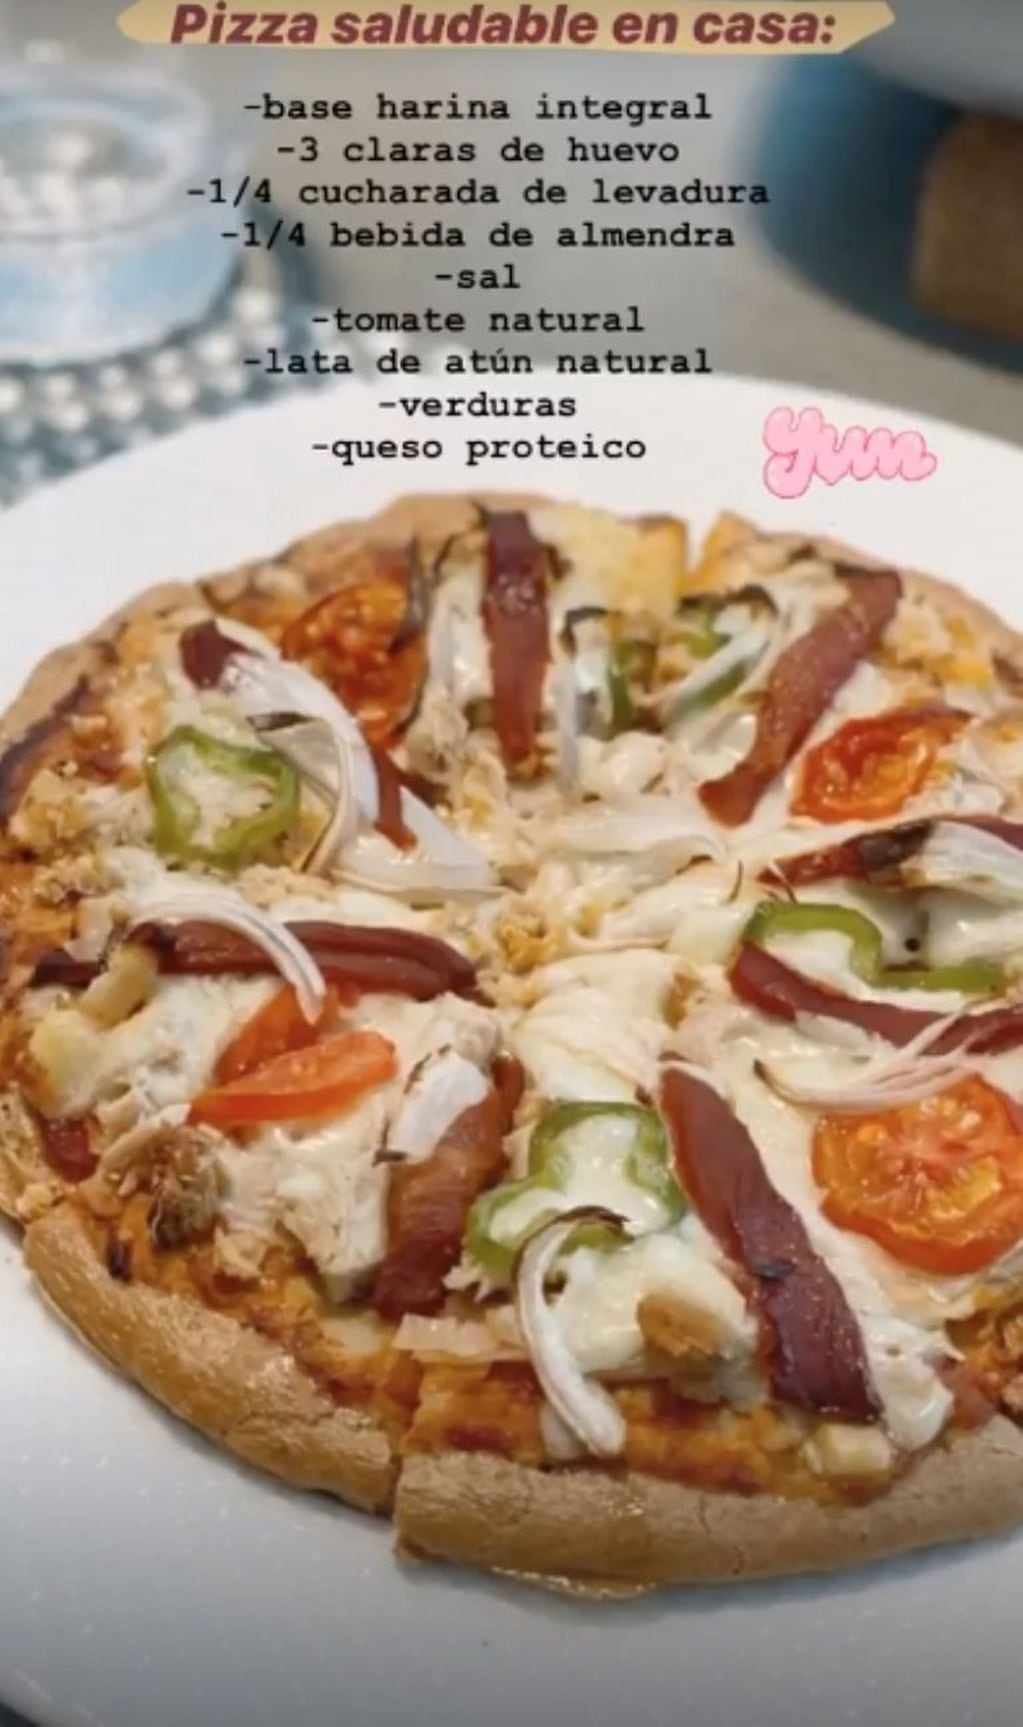 La pizza saludable de Antonela Roccuzzo